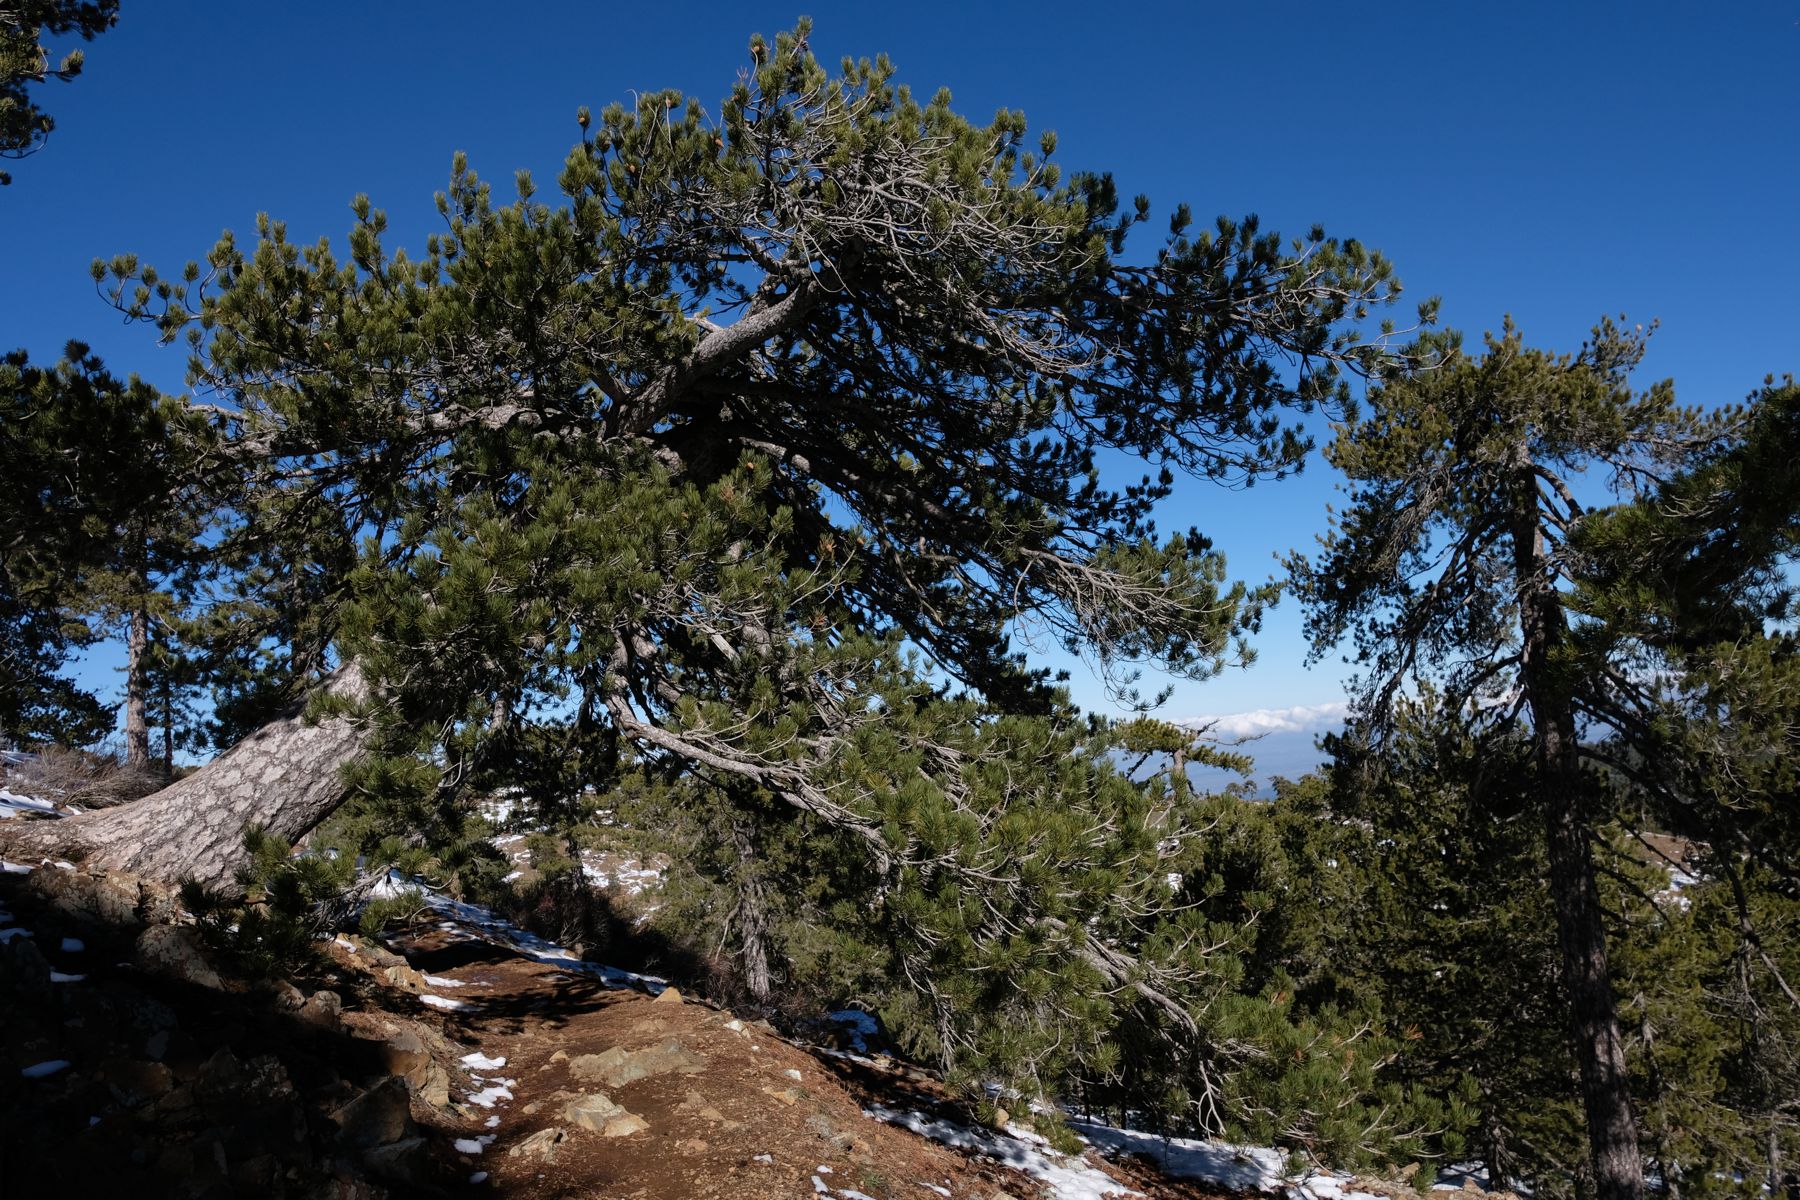 Leaning tree on Artemis trail